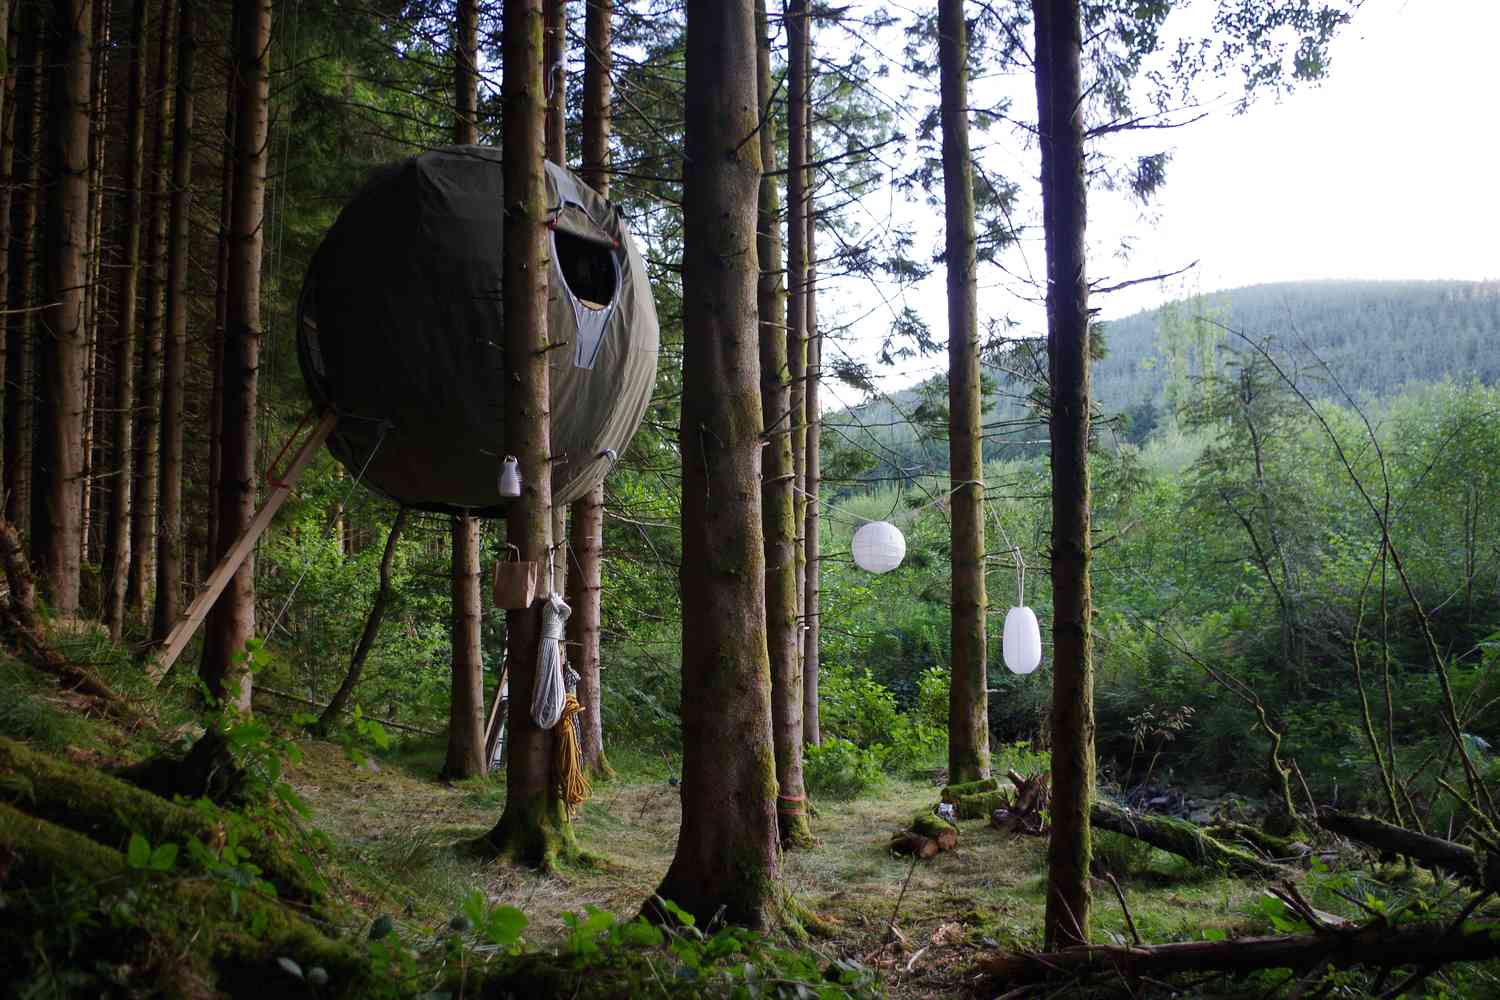 Estrutura em forma de esfera suspensa em árvores acima do solo da floresta